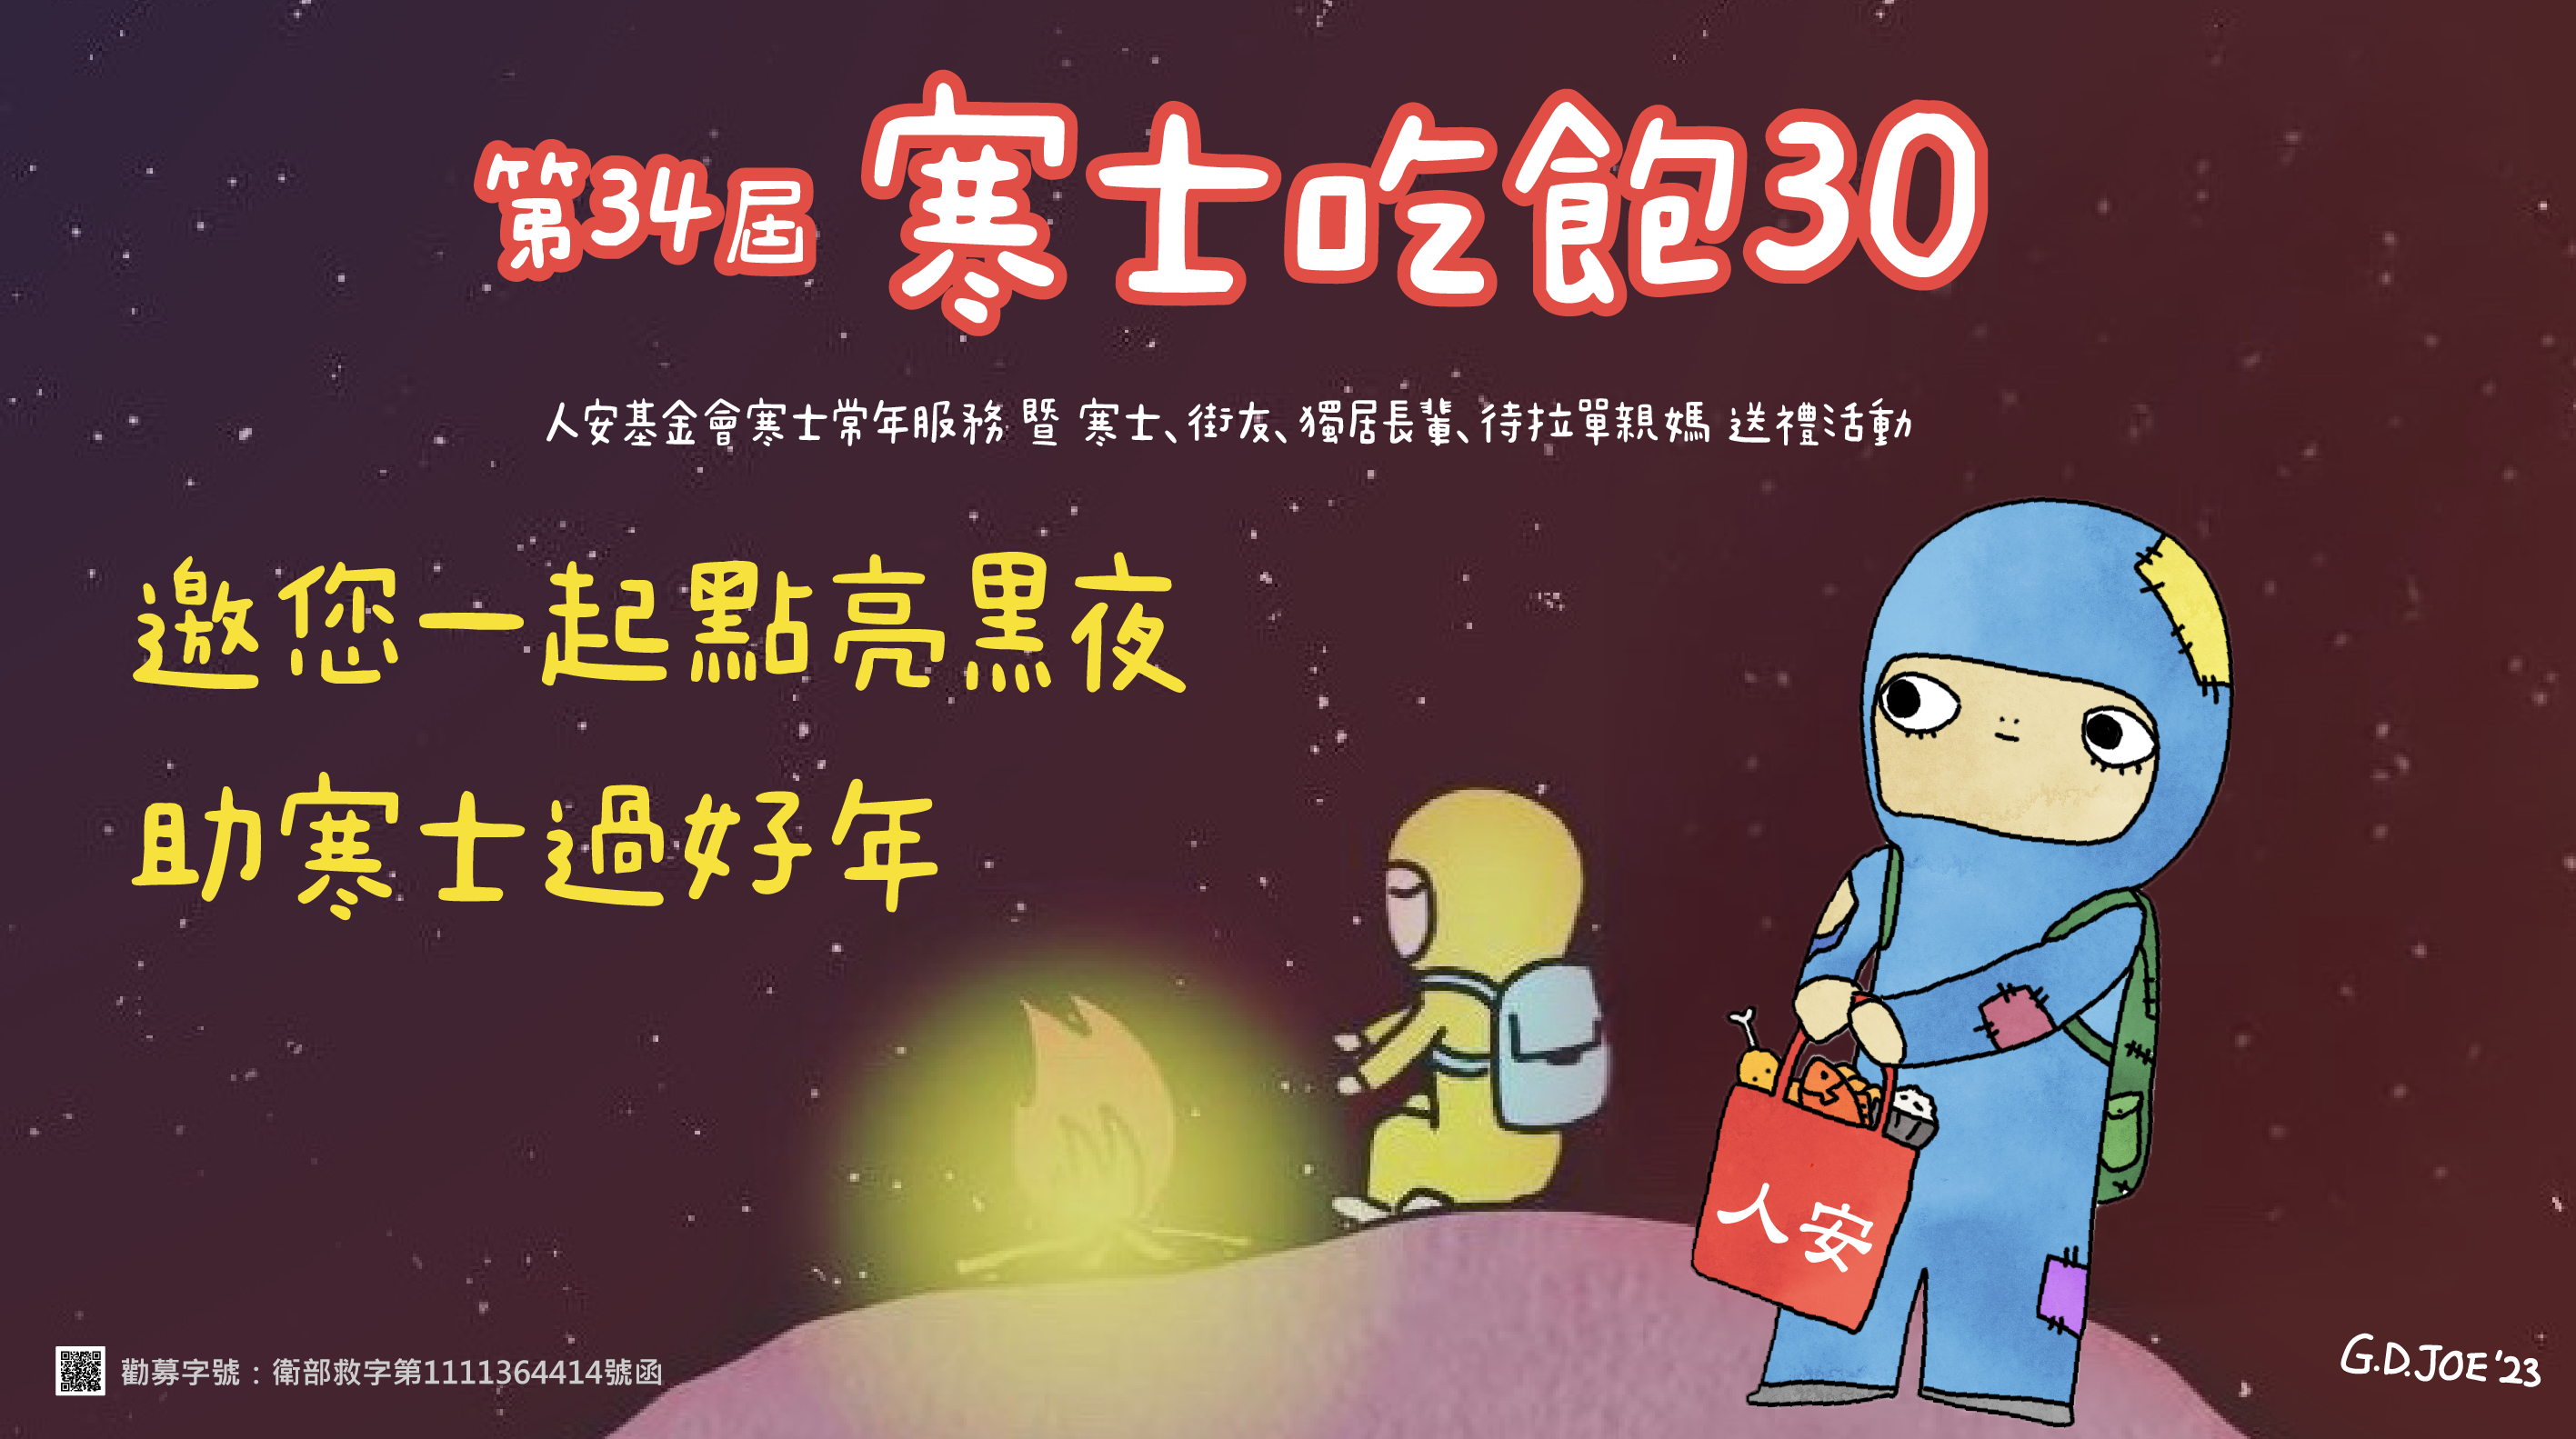 「第34屆寒士吃飽30」-陽信銀行 